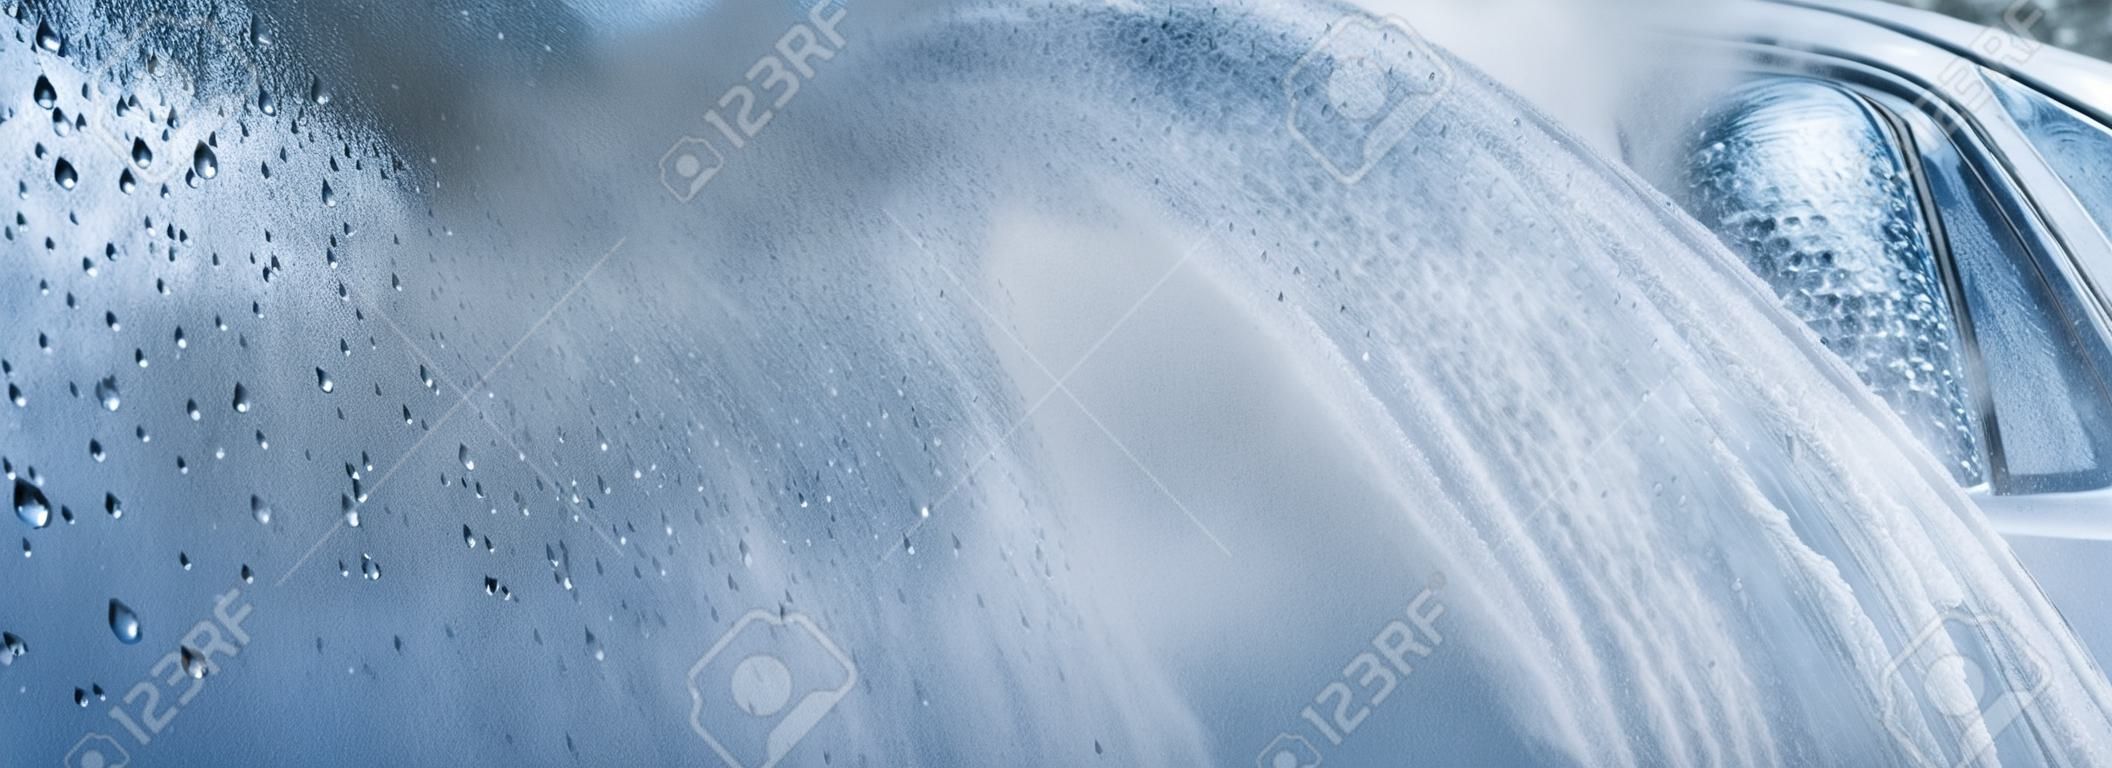 Bannière de lavage de voiture abstraite, se concentrer uniquement sur les gouttes d'eau, pulvérisation au jet sur la voiture floue, tonique en bleu clair.